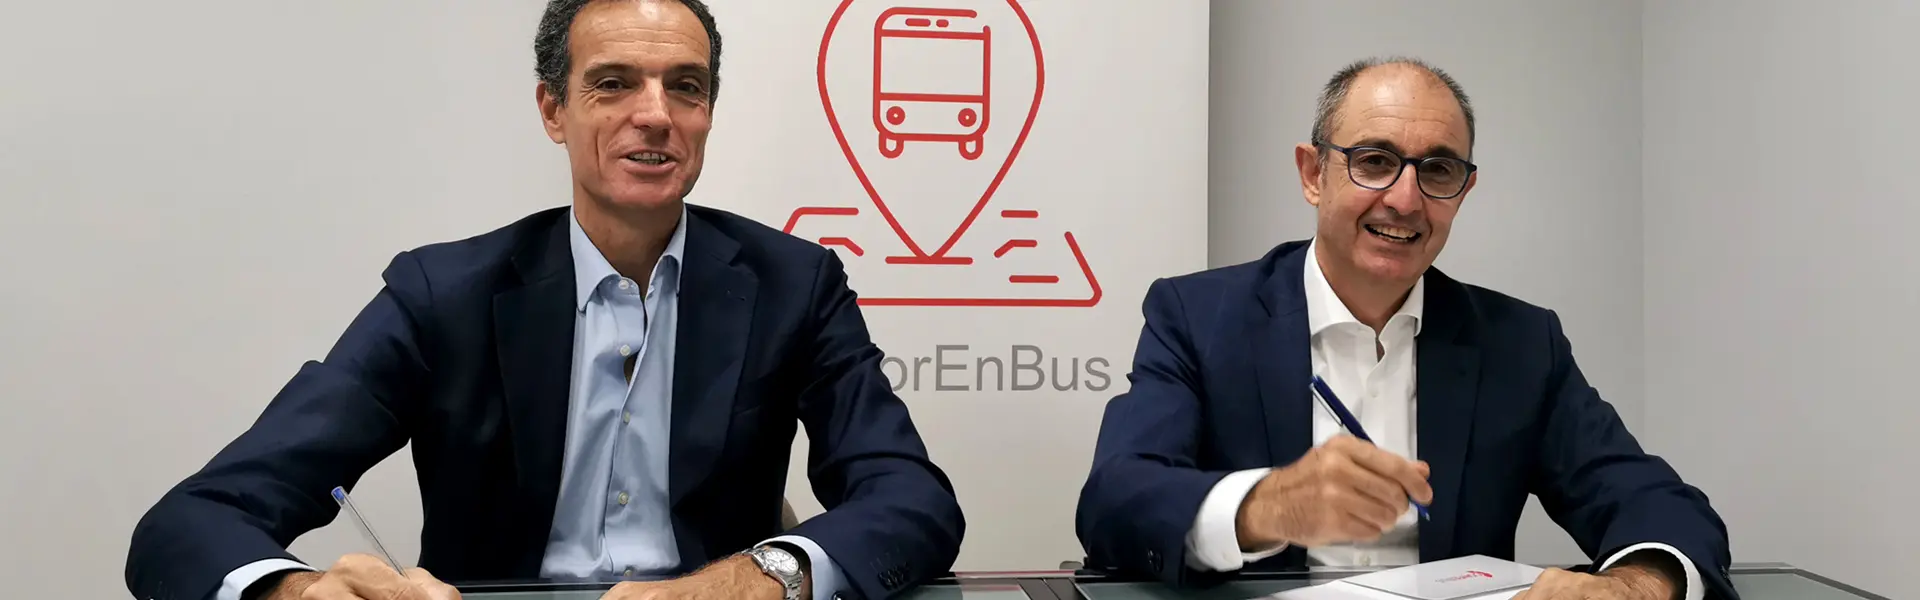 Acuerdo entre Iberaval y Confebus para facilitar el credito a empresas de transporte de viajeros por carretera hemeroteca cesgar web